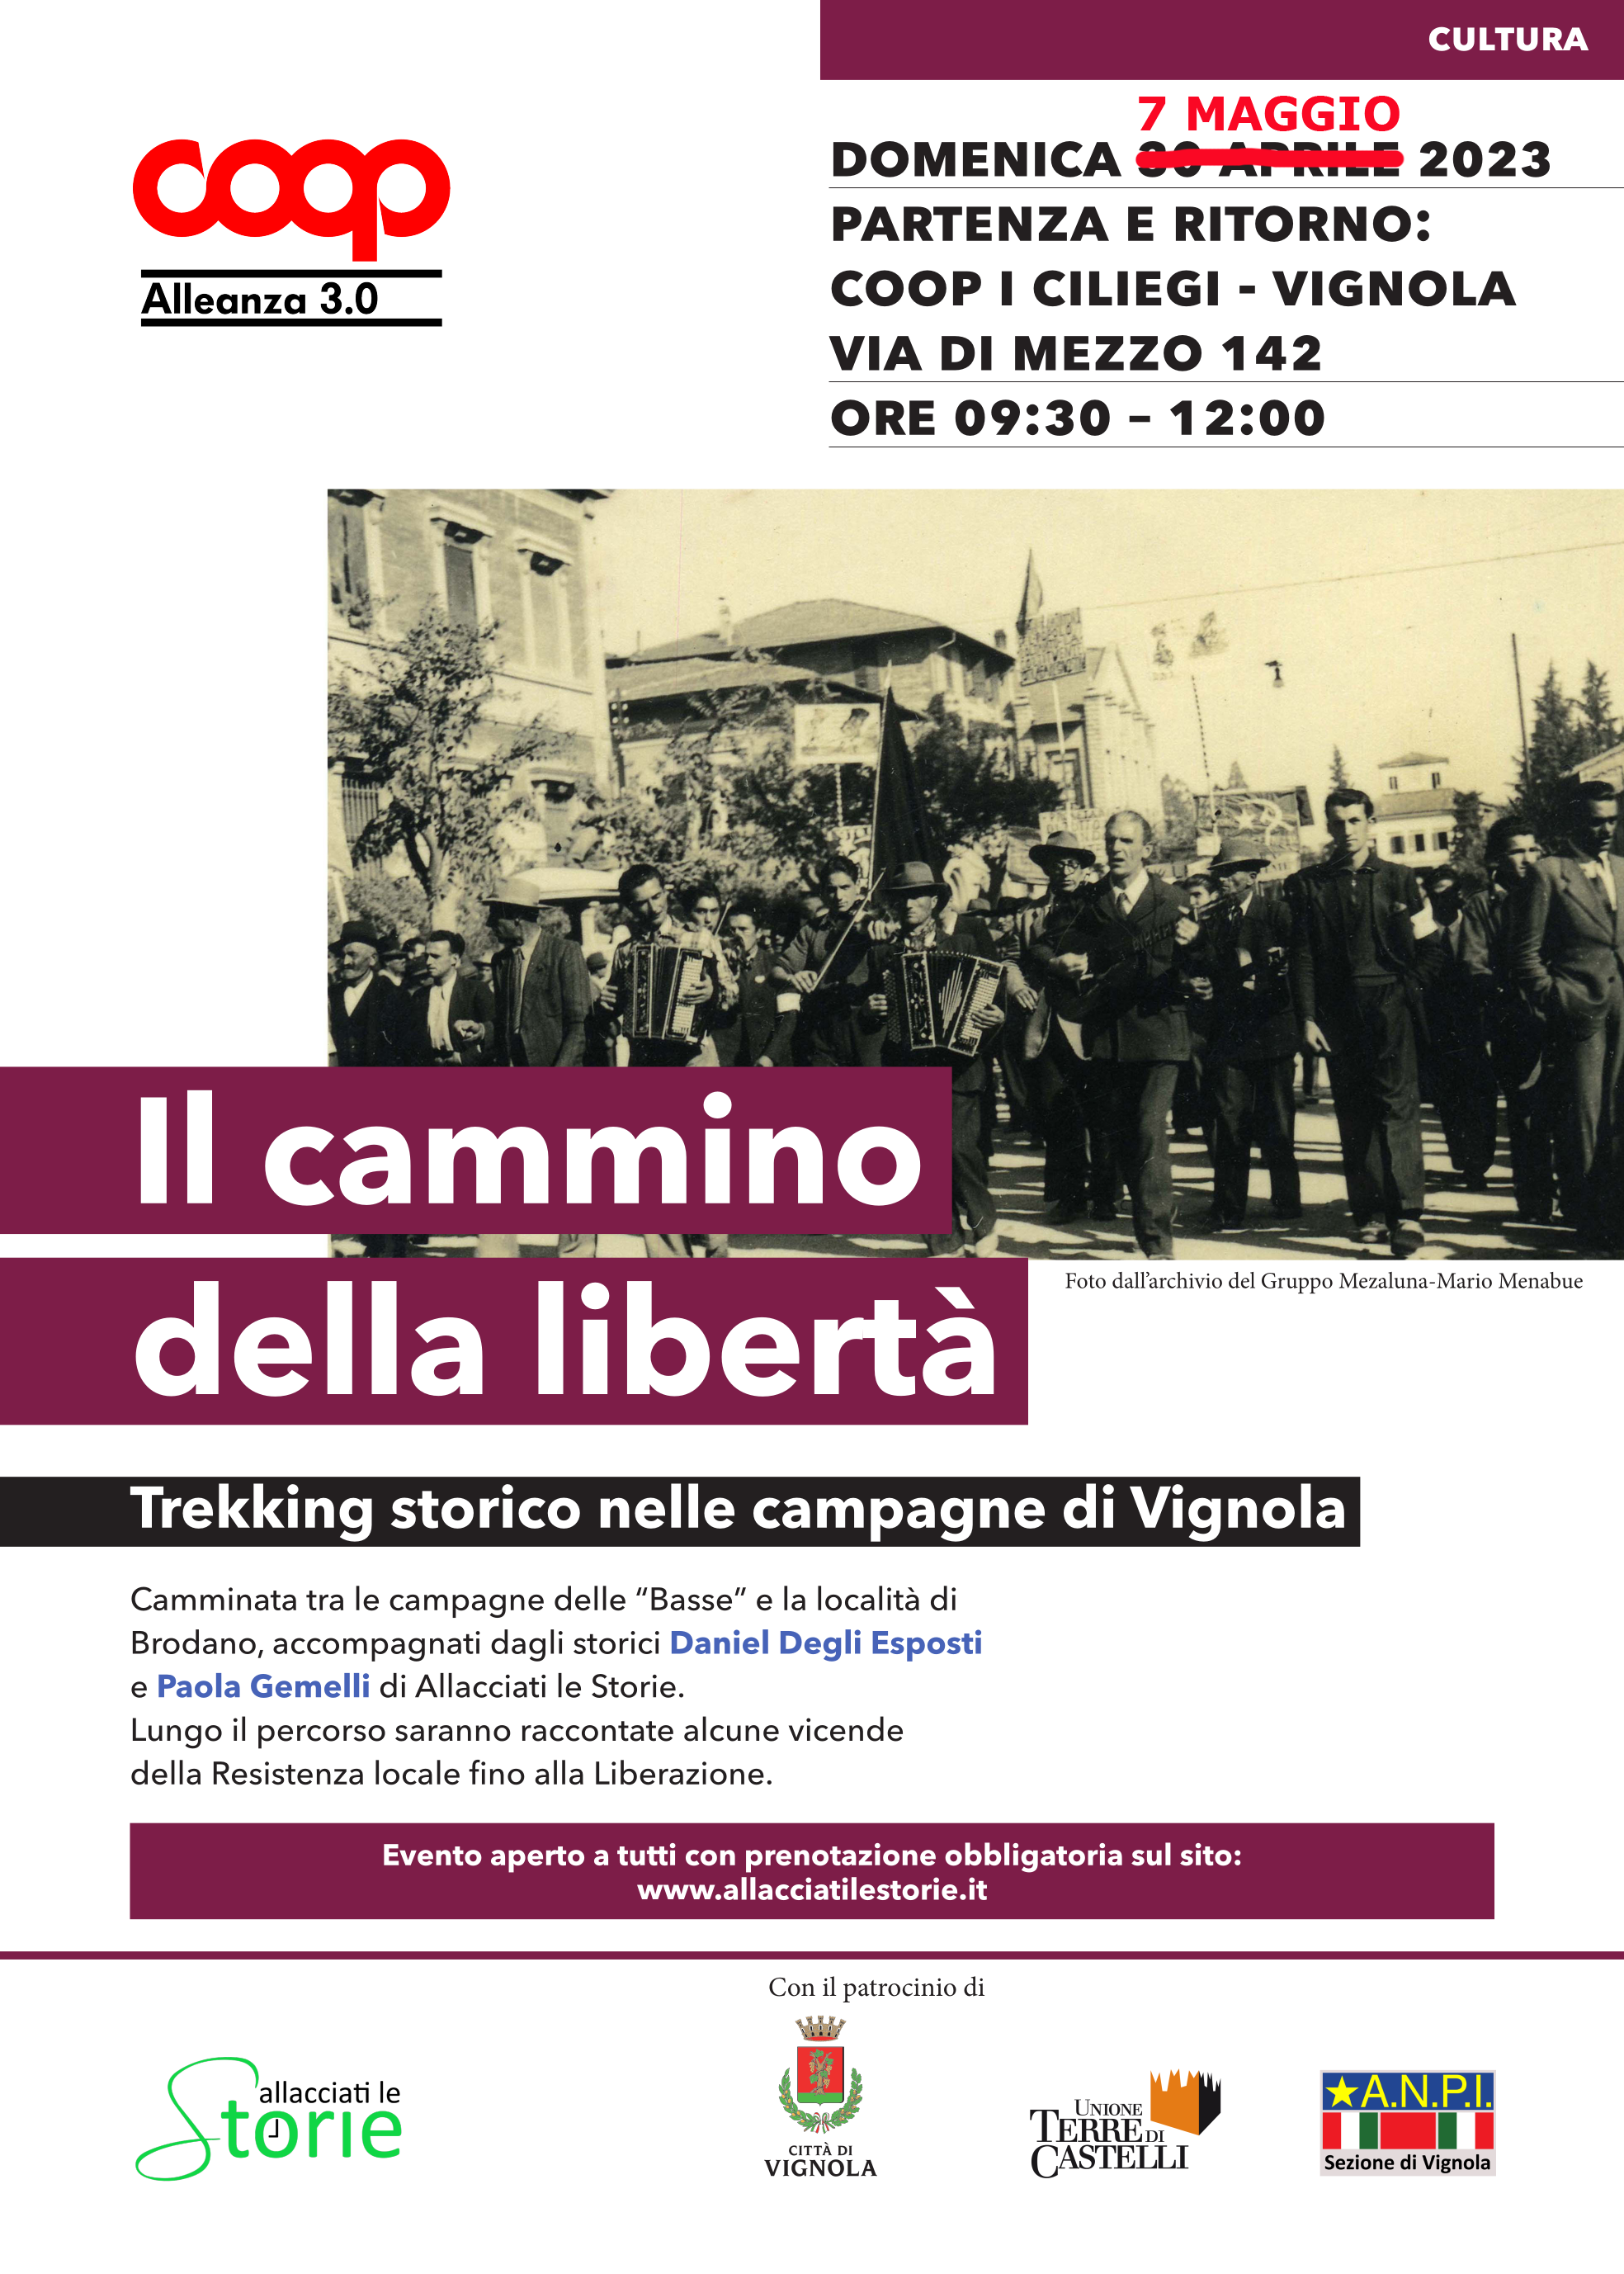 Locandina del trekking storico "Il cammino della libertà", in programma a Vignola il 7 maggio 2023